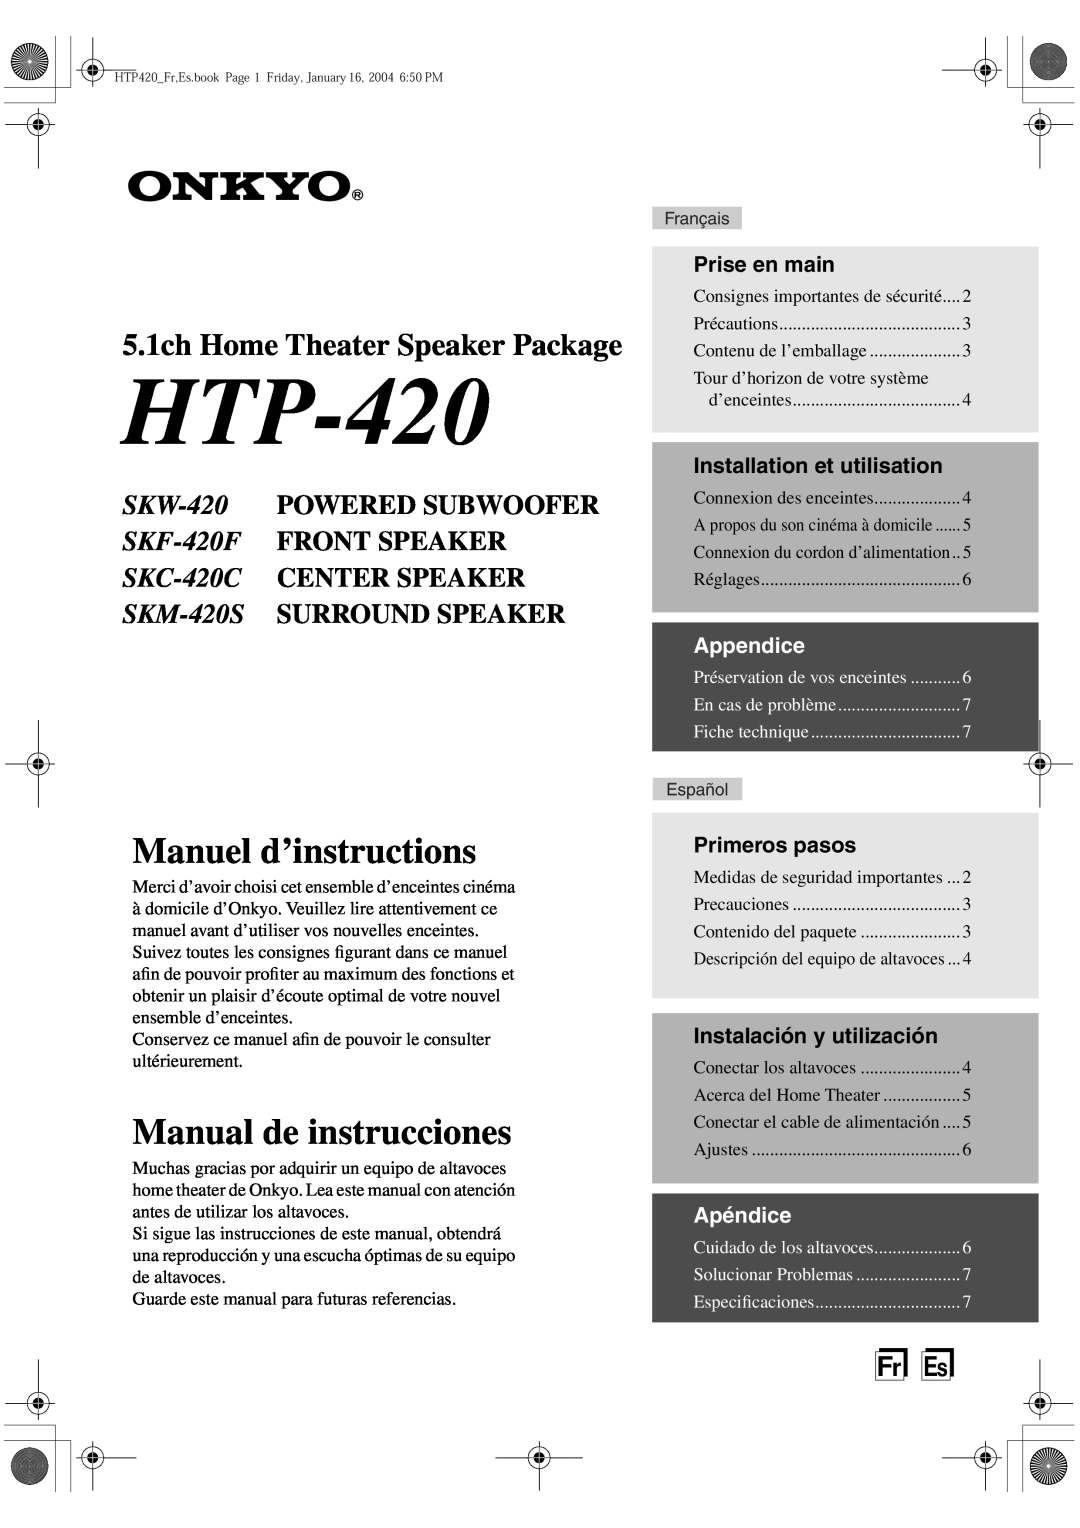 Onkyo HT-R420 5.1ch Home Theater Speaker Package, FrEs, Prise en main, Installation et utilisation, Appendice, Apéndice 